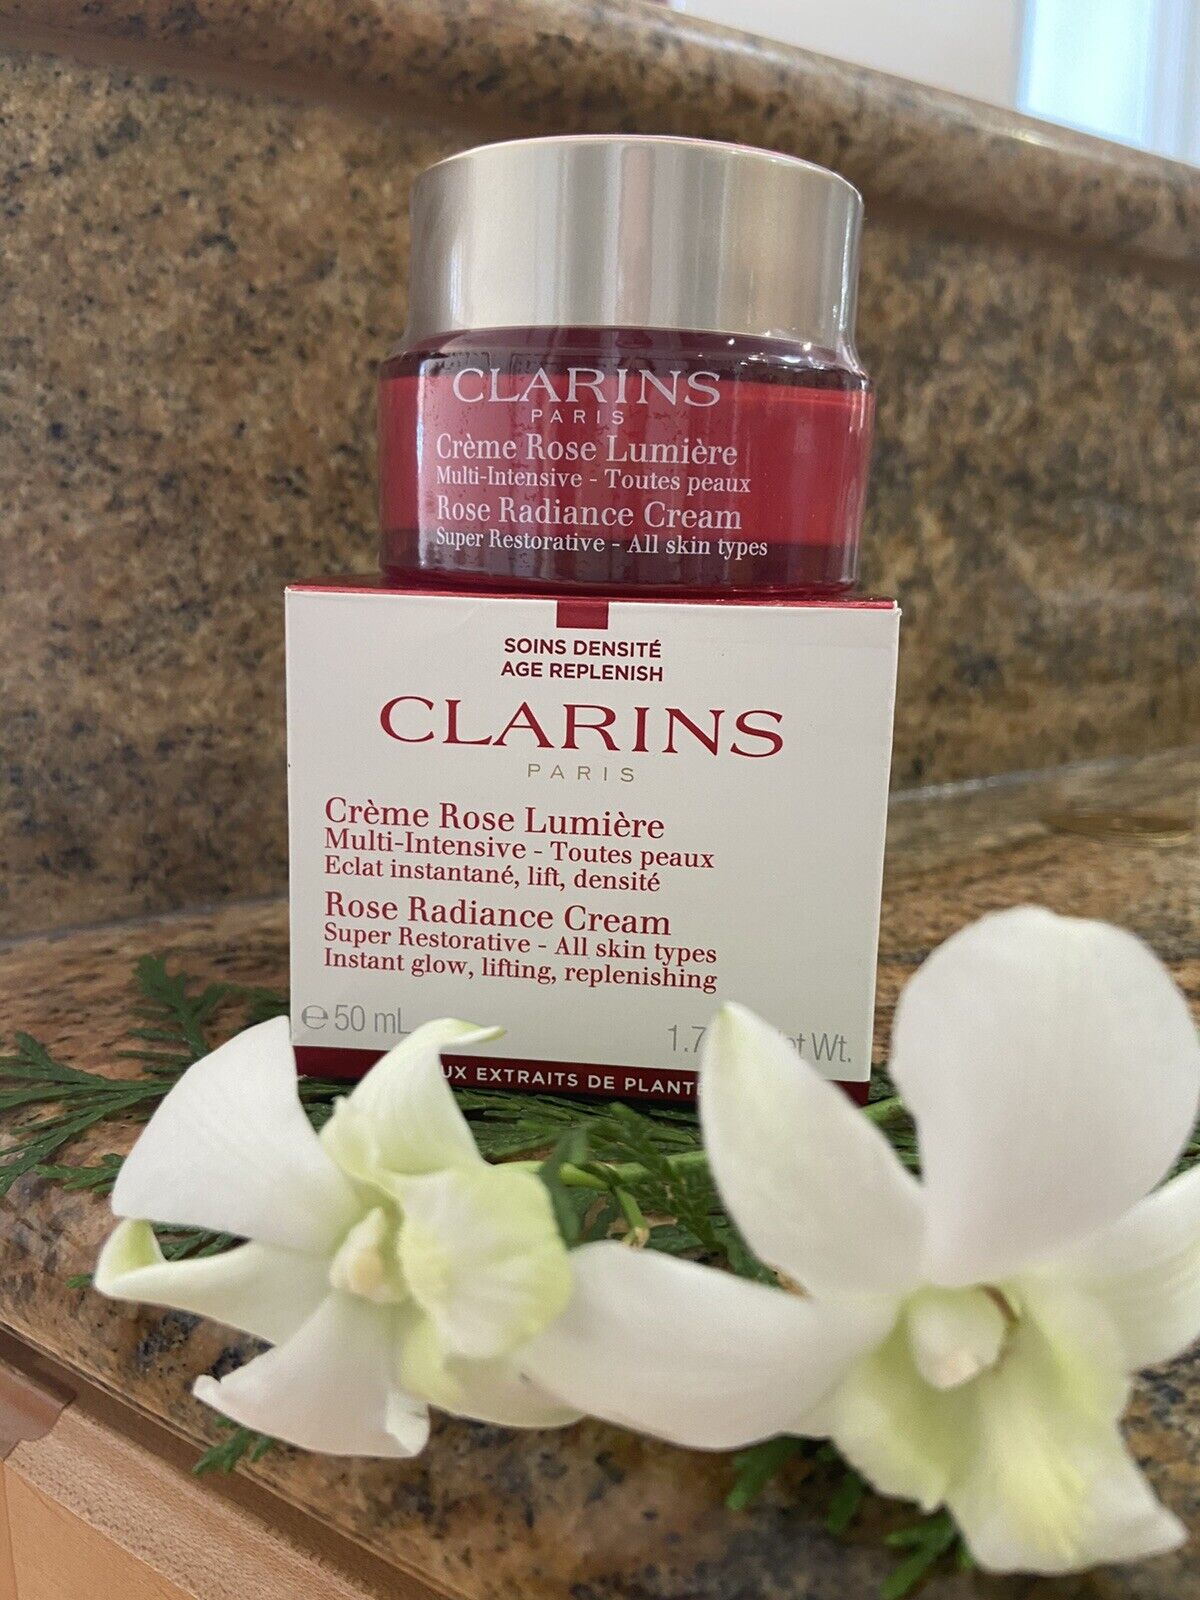 Clarins Super Restorative Rose Radiance Cream - 1.7oz. Retail Price $129